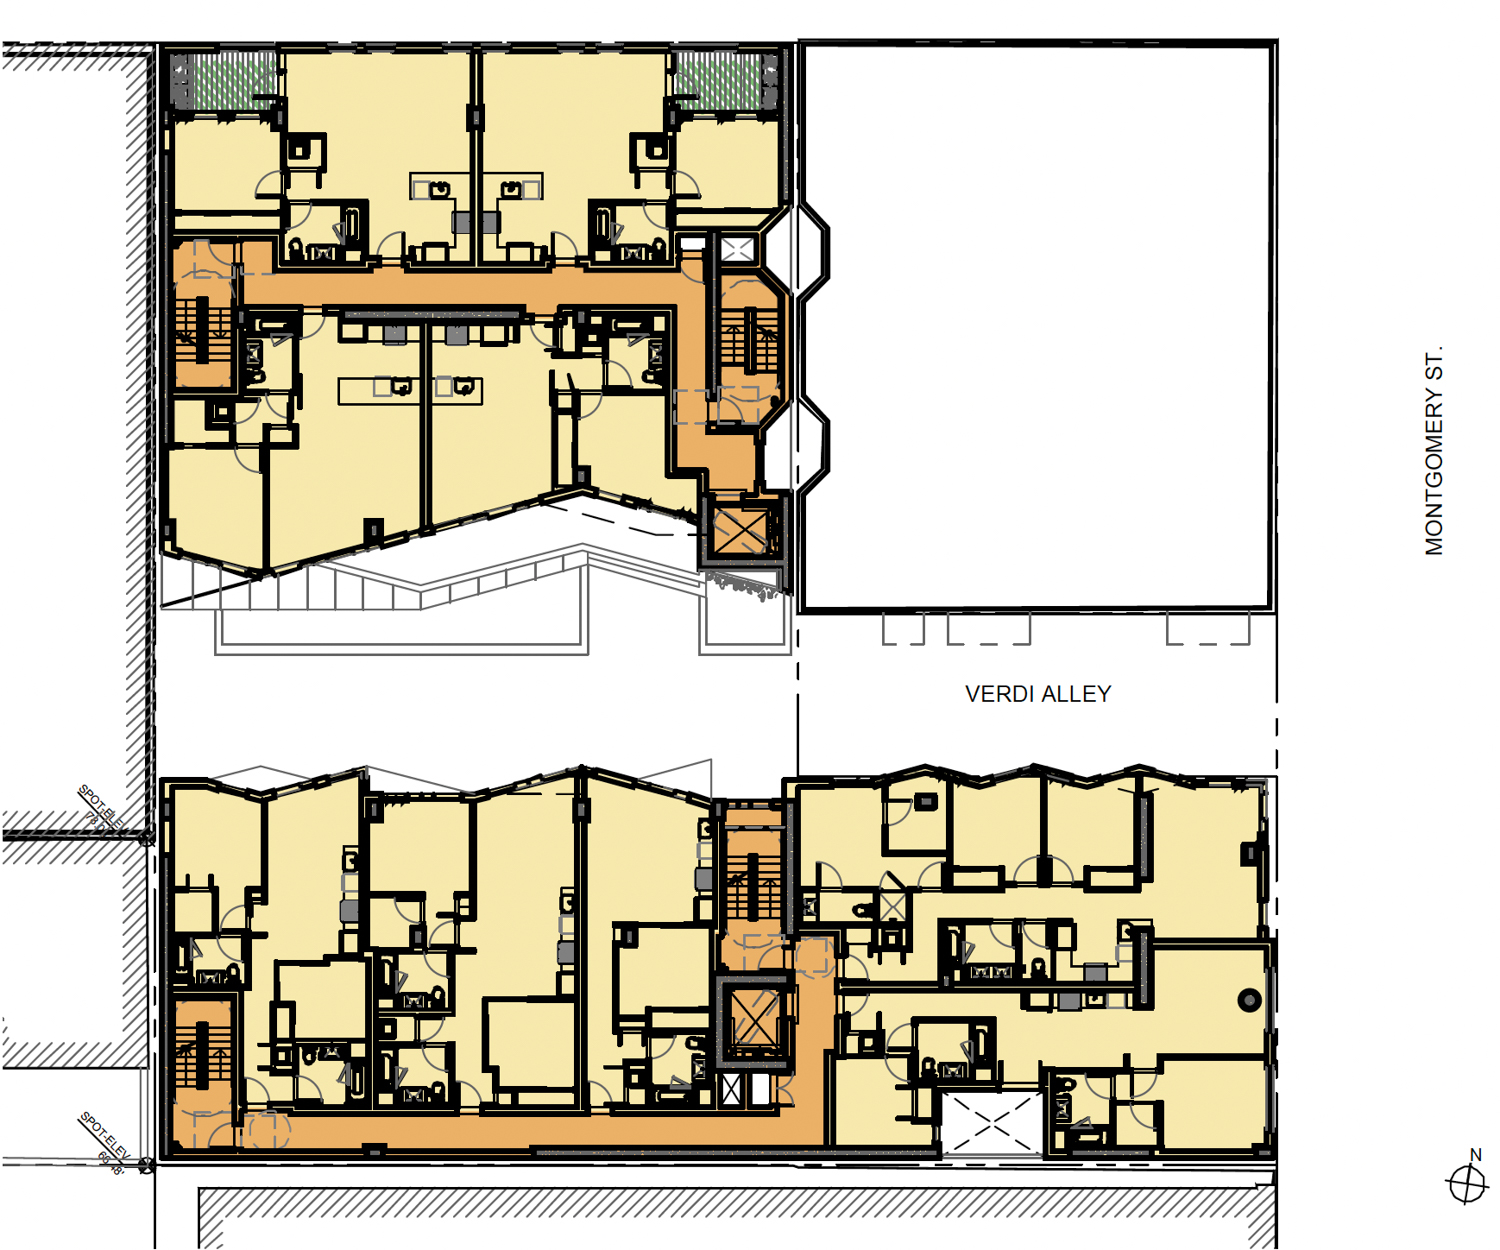 425 Broadway floor plan, rendering by Ian Birchall & Associates